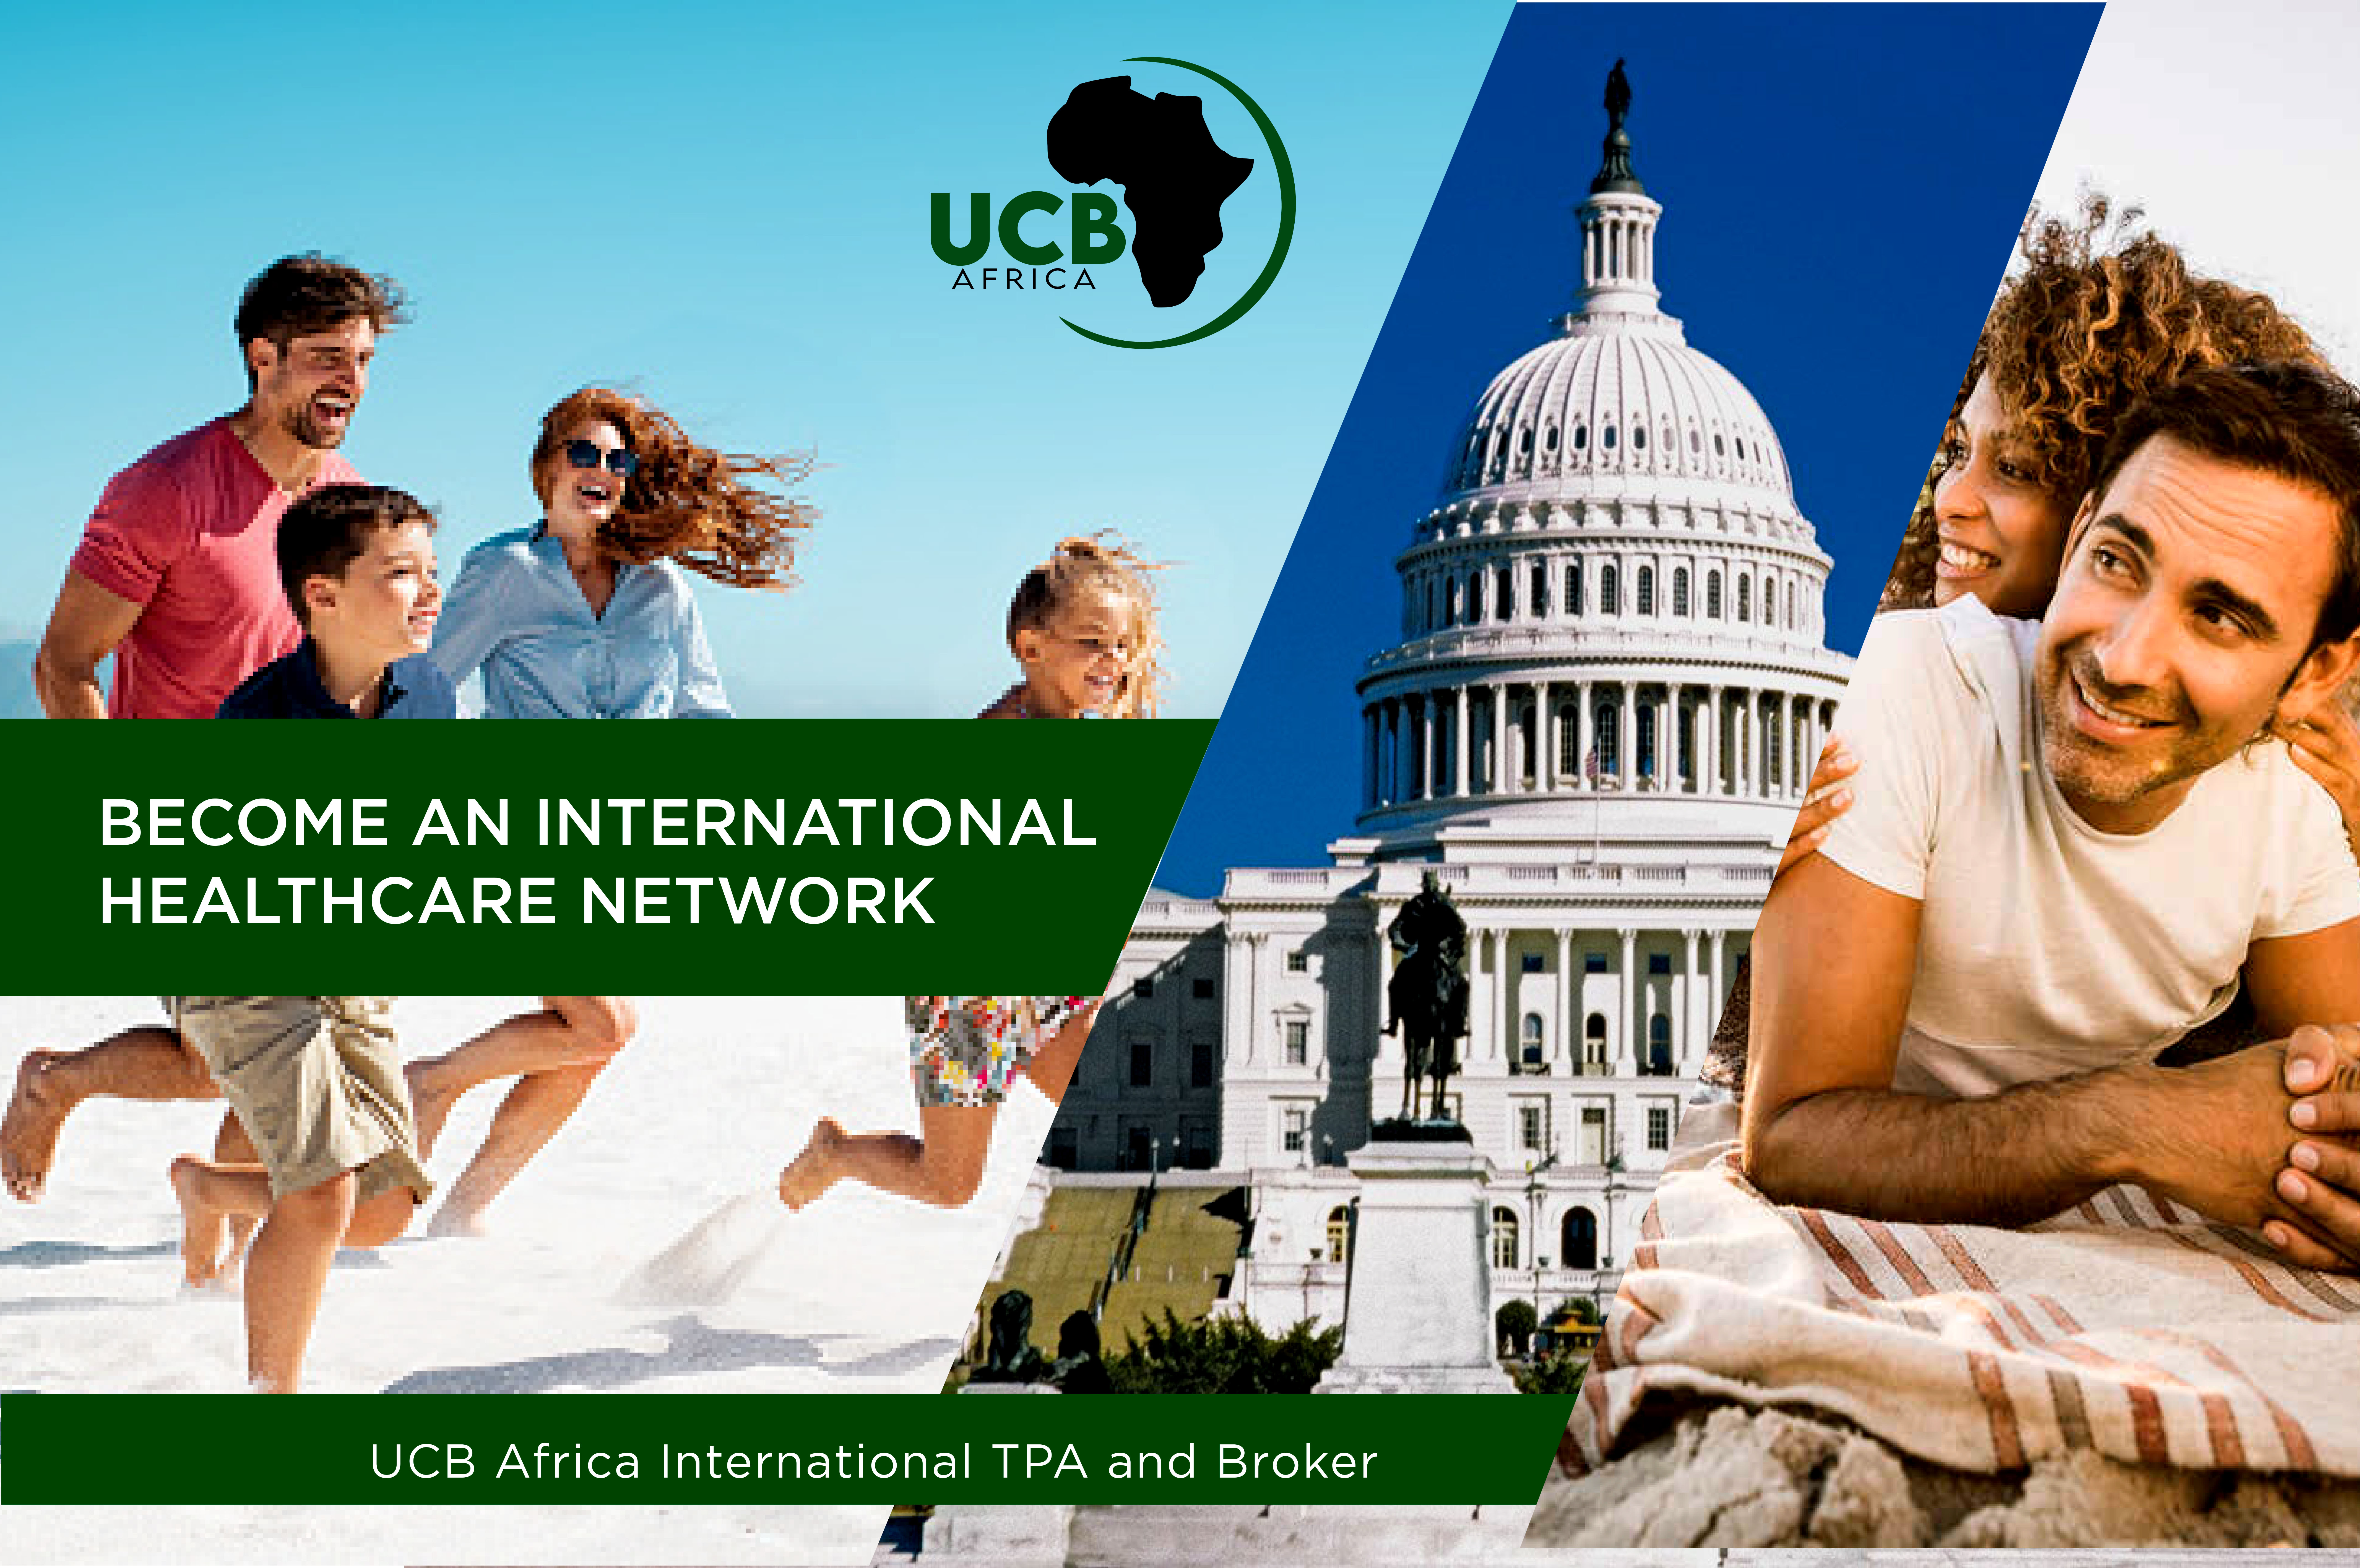 UCB global network